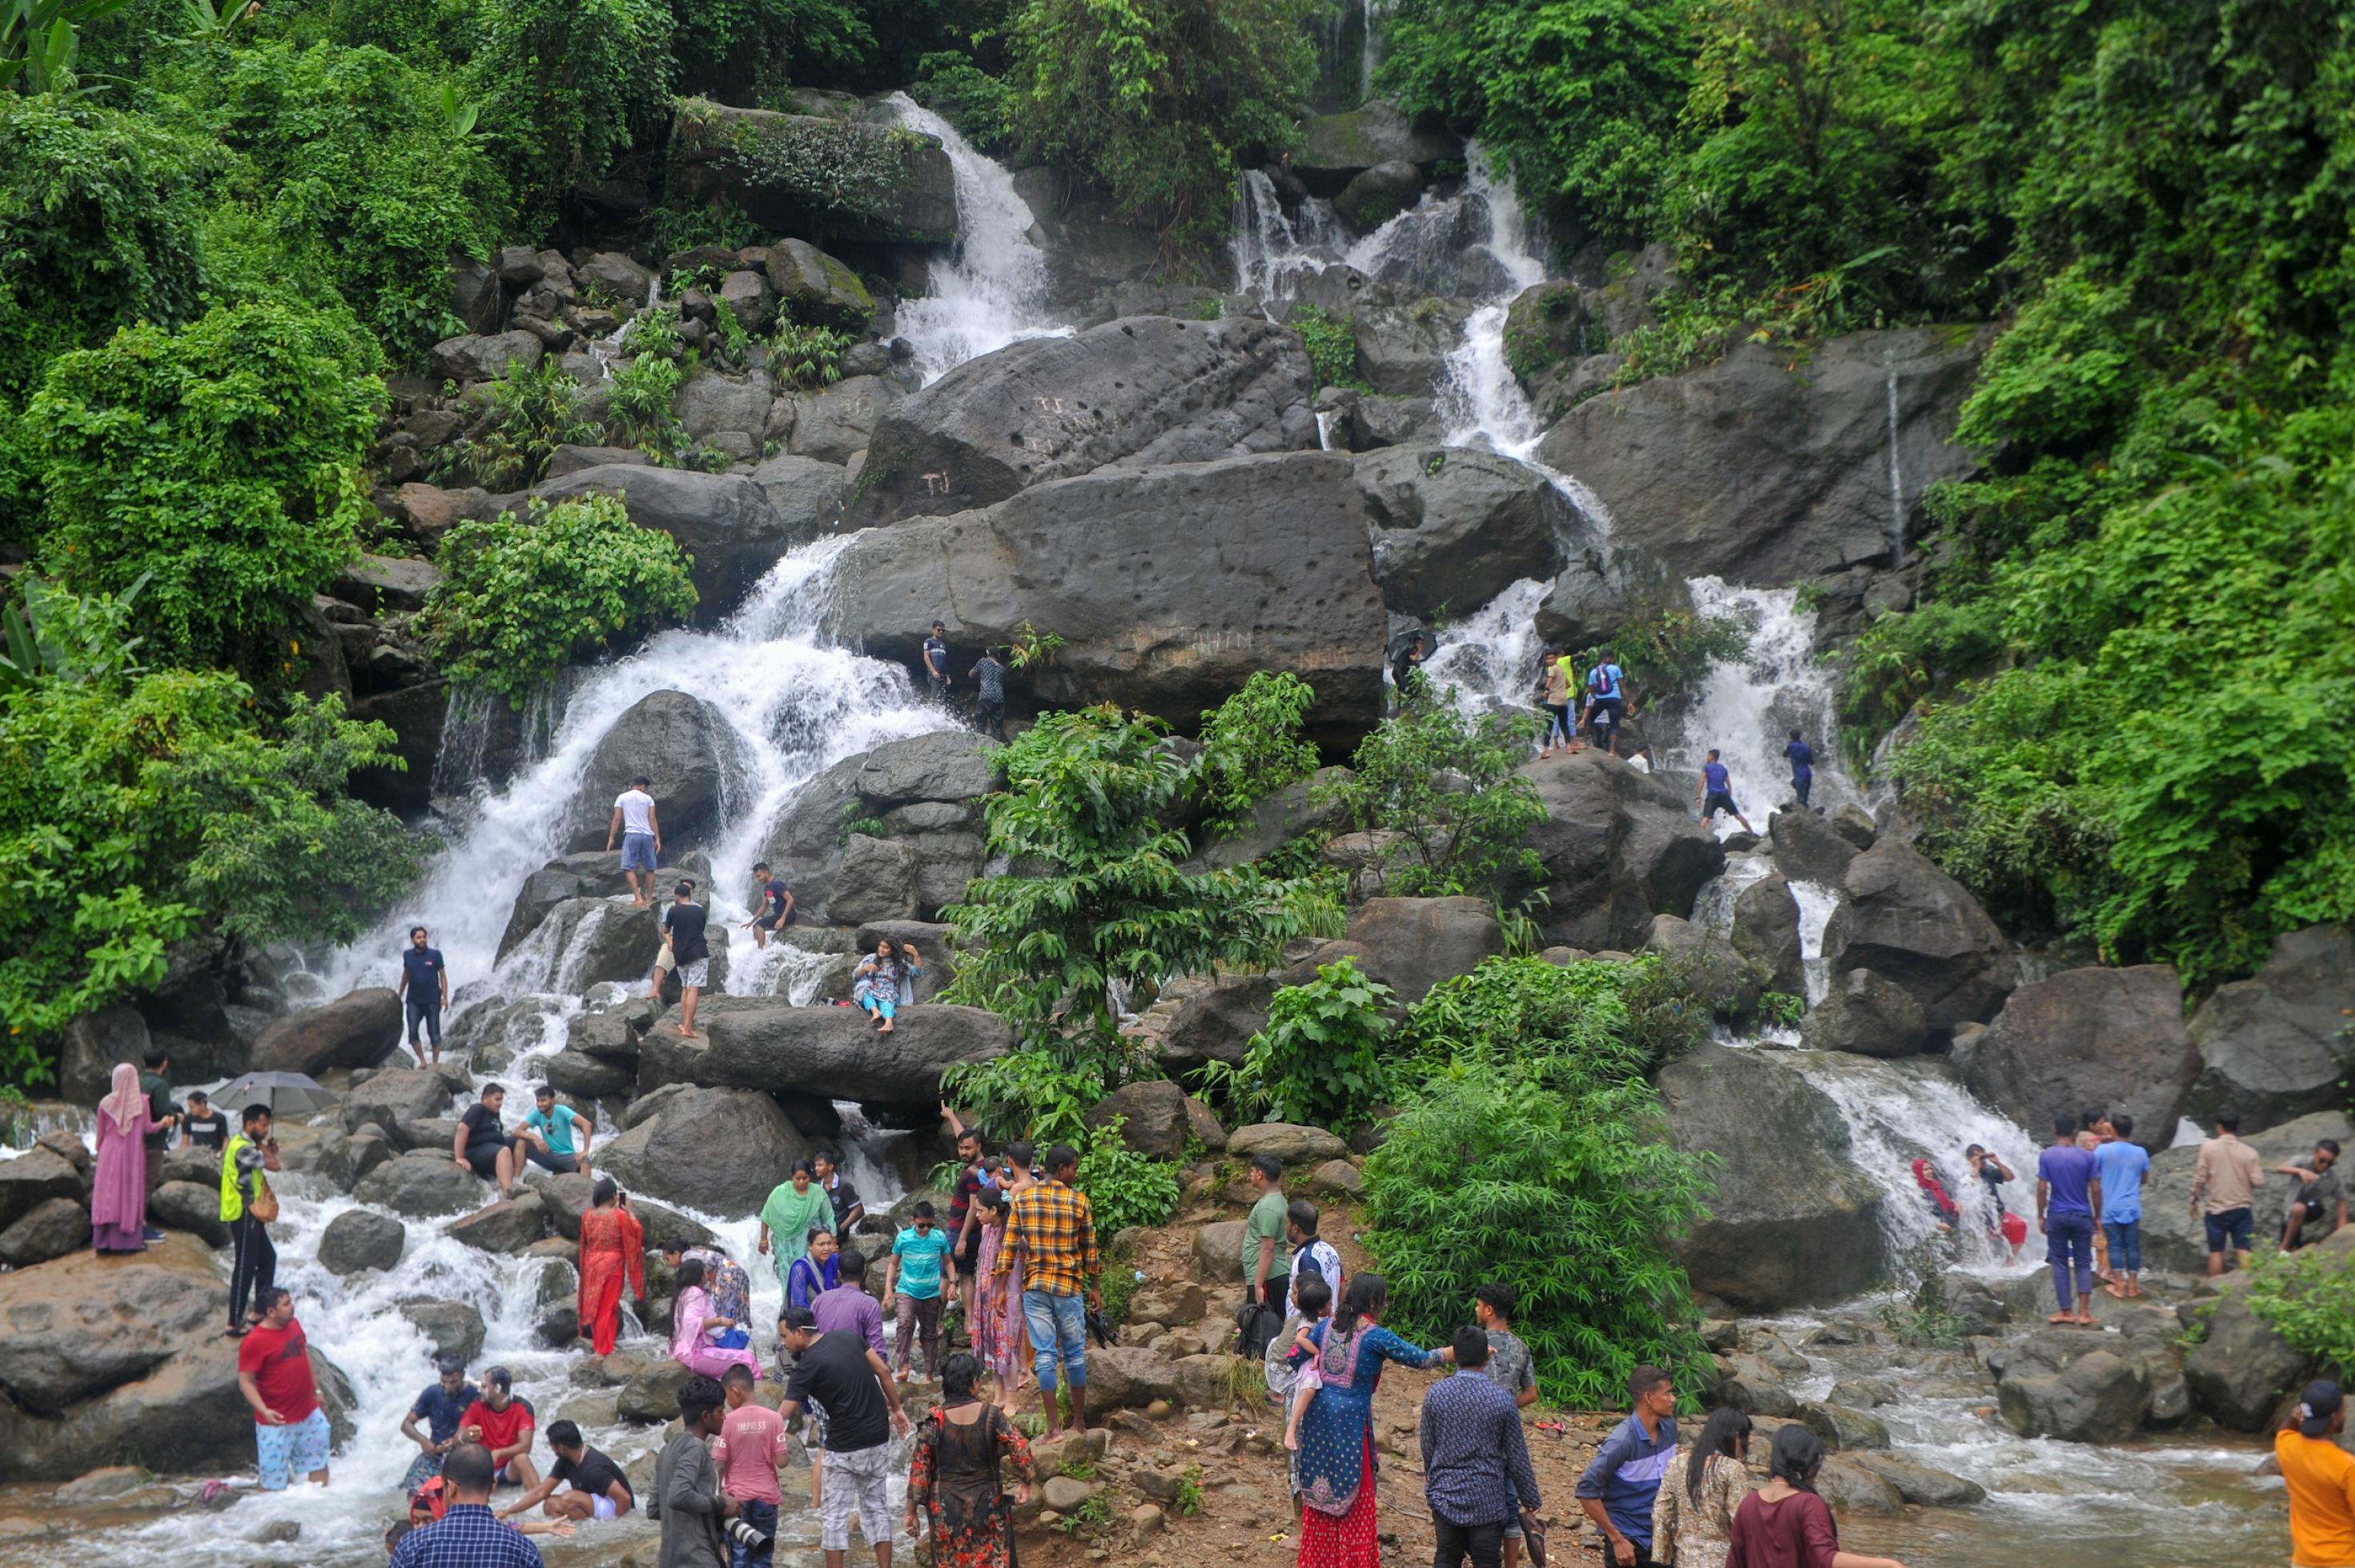 Menschen stehen in Bangladesch am Fuss eines großen Wasserfalls, der aus dem Wald kommt.